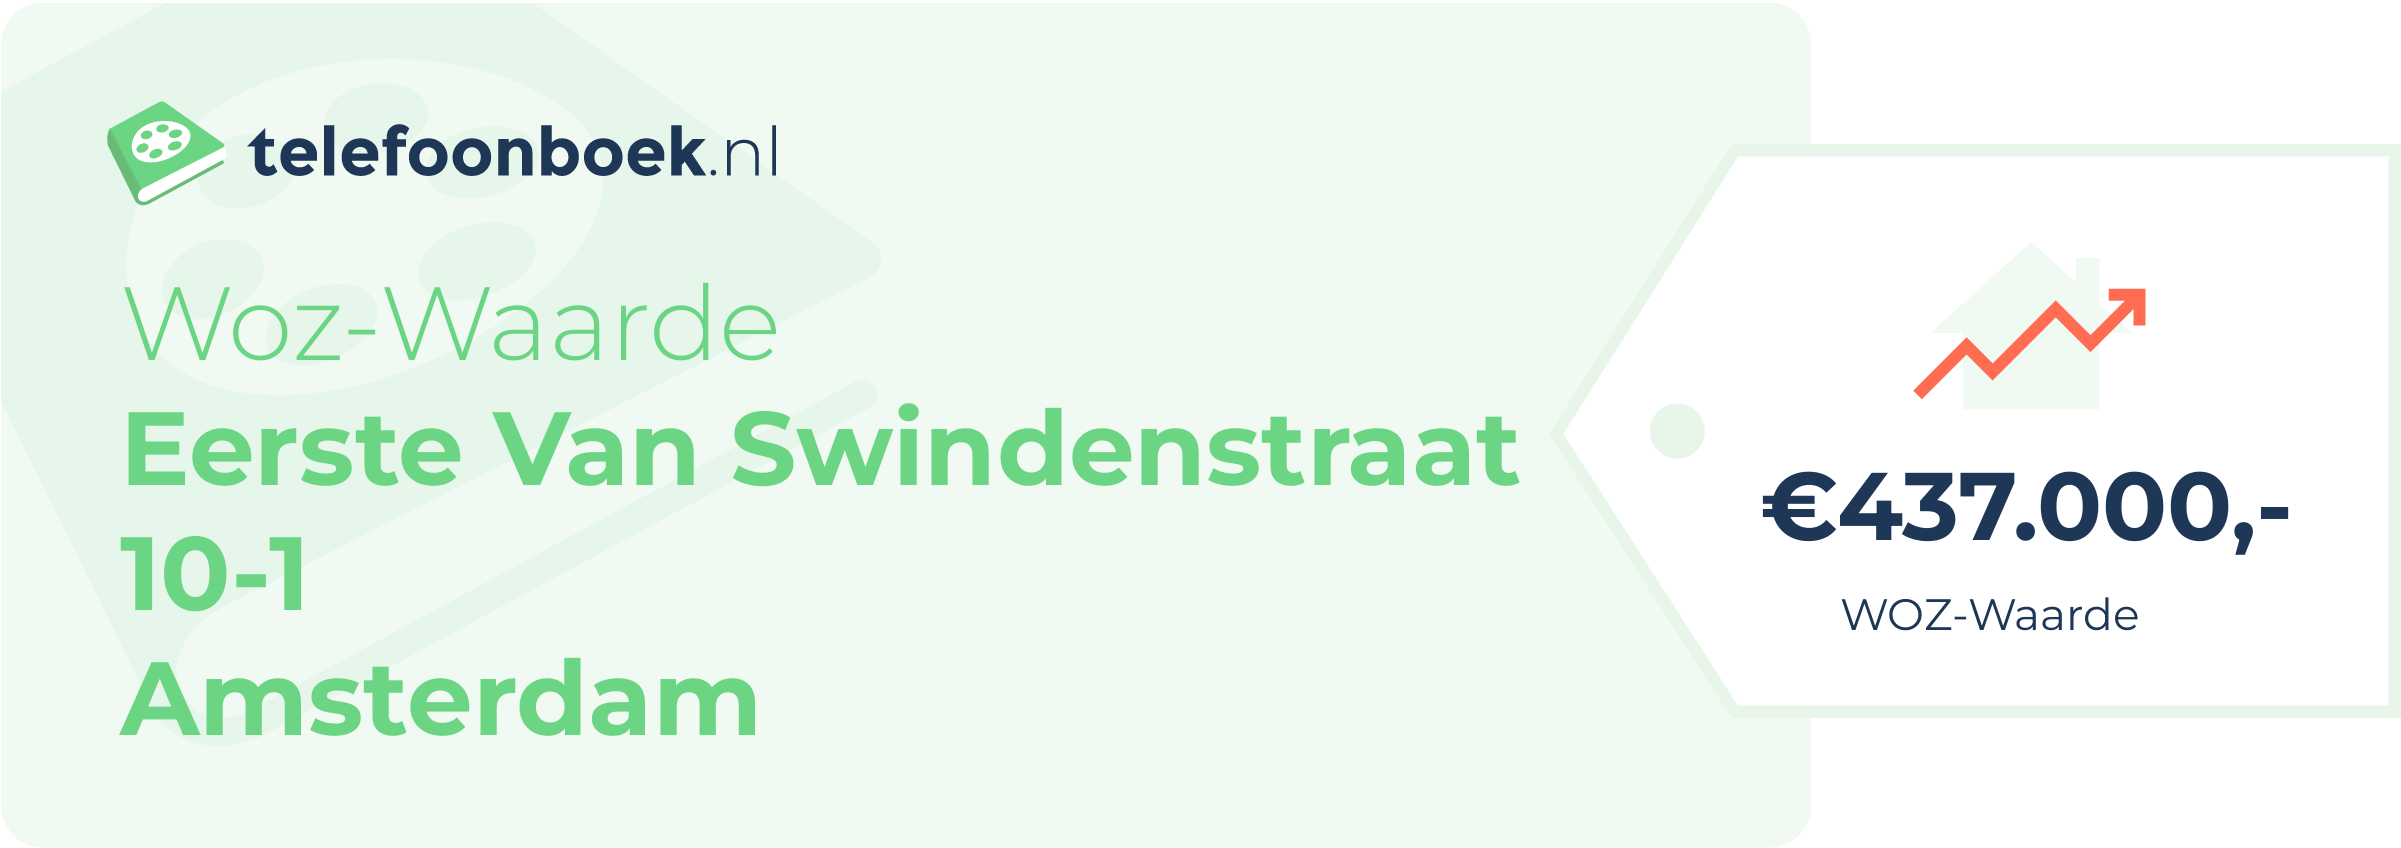 WOZ-waarde Eerste Van Swindenstraat 10-1 Amsterdam